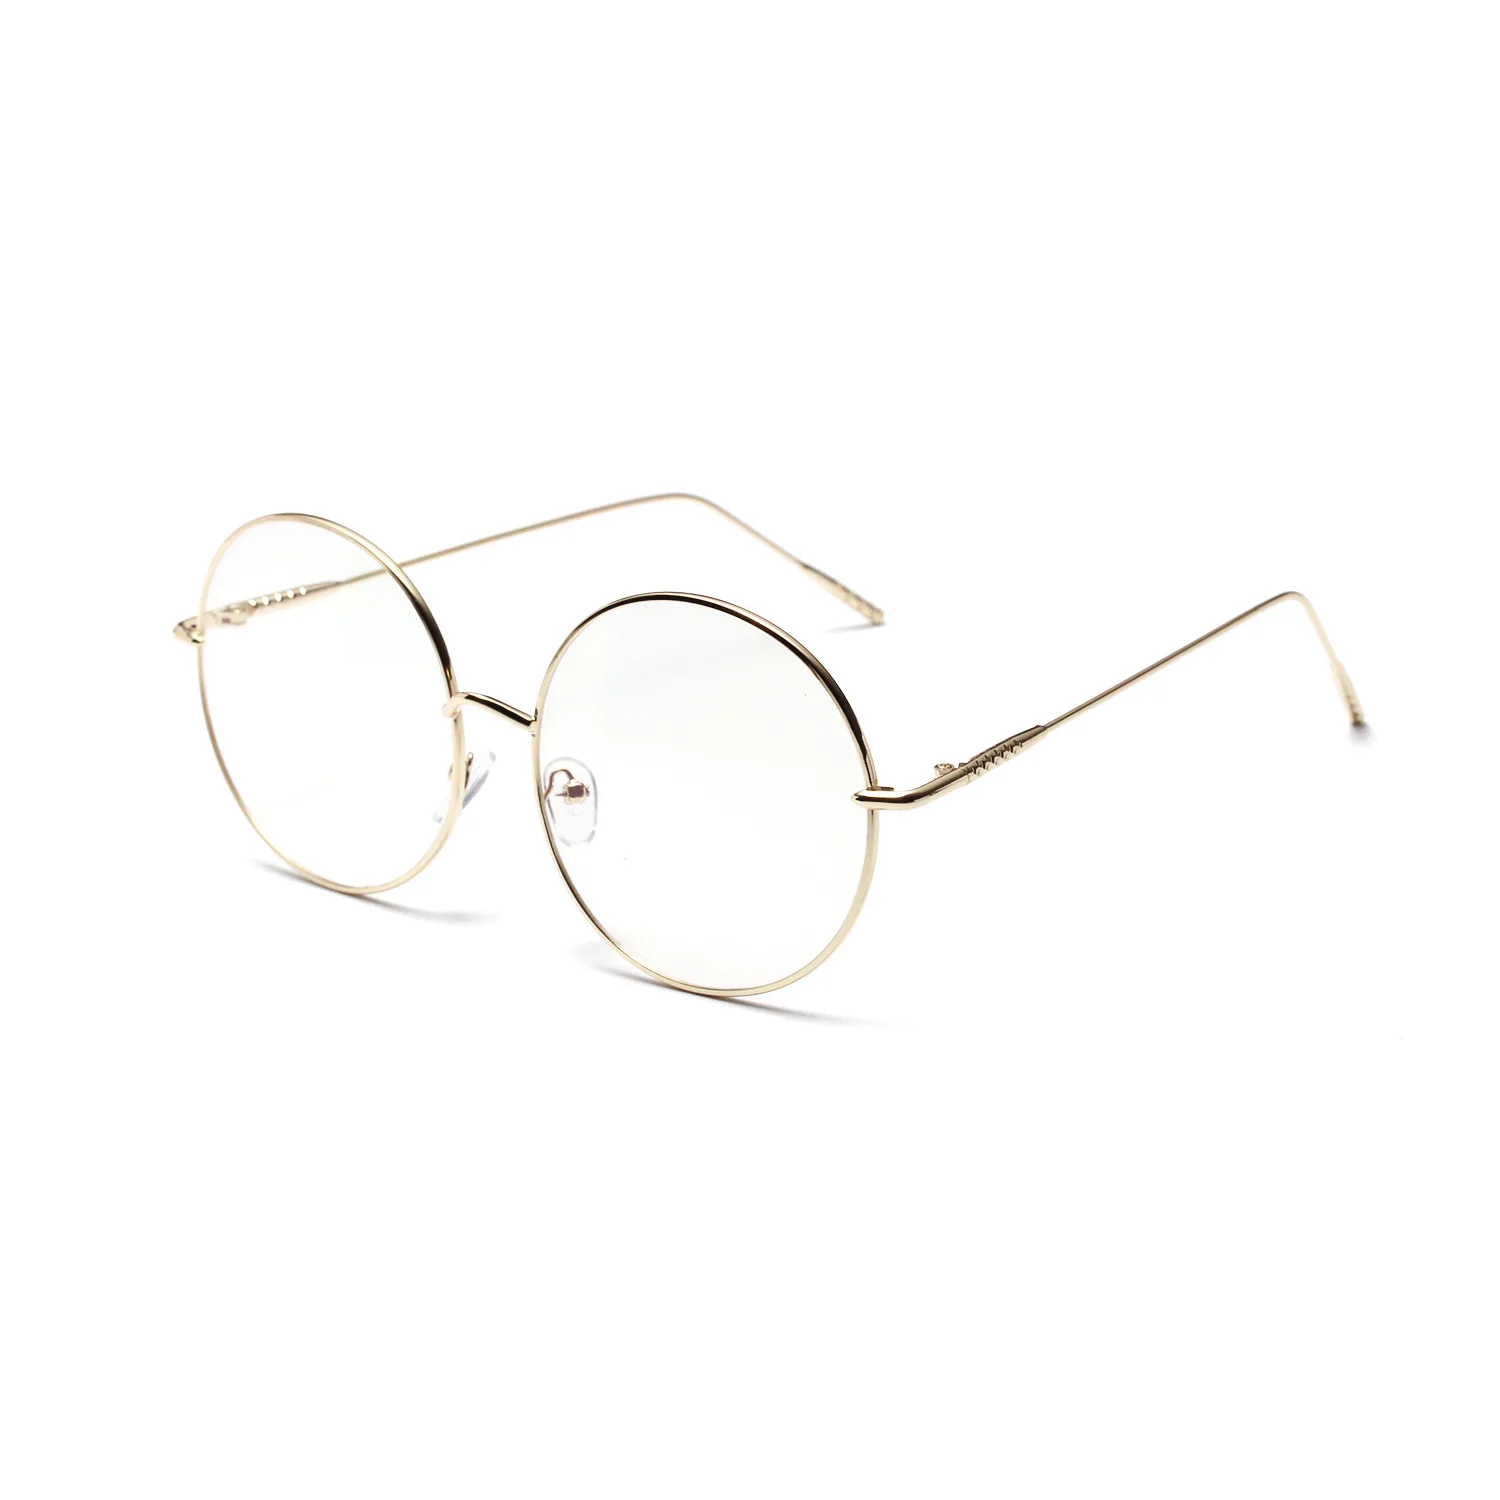 Metal çerçeve yuvarlak düz gözlük kadın ince çerçeve dekoratif gözlük erkekler ve kadınlar için uv400 Görüntü 1